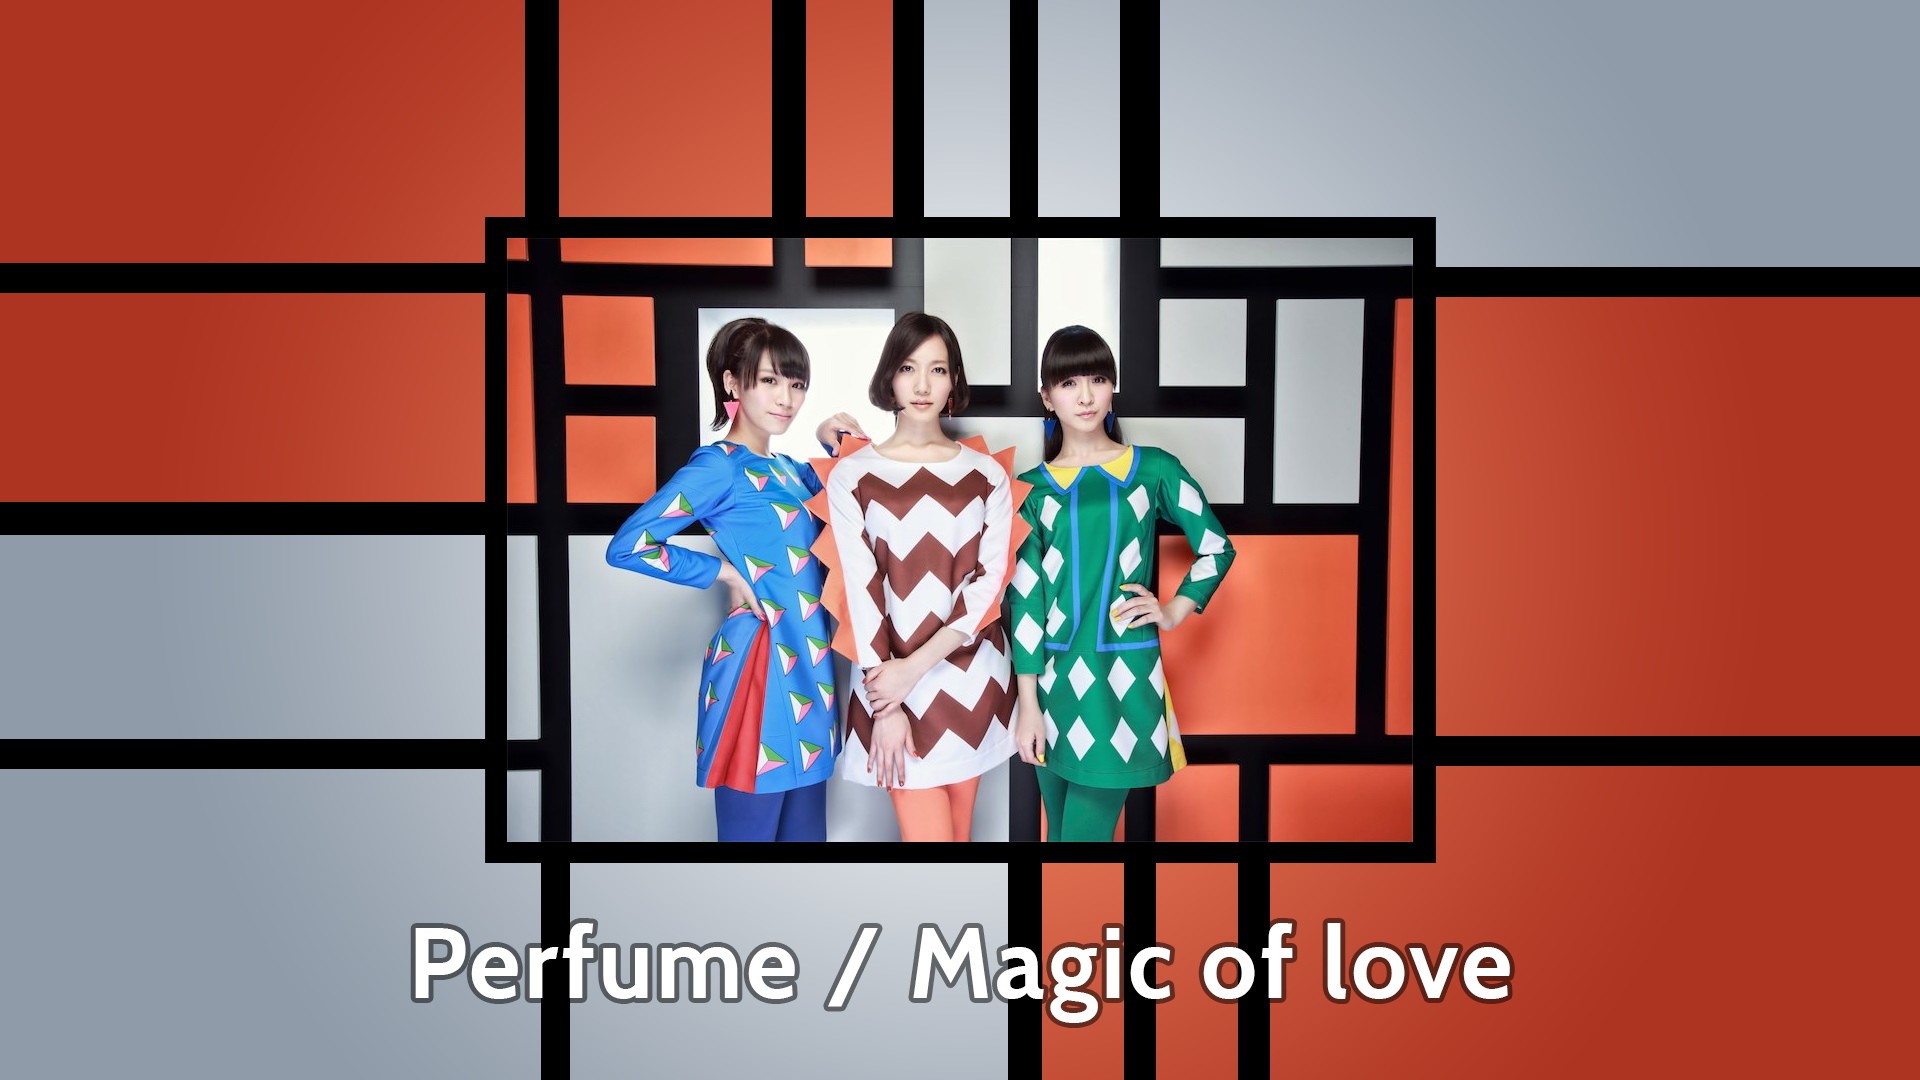 Asian Perfume Band Women Model 1920x1080